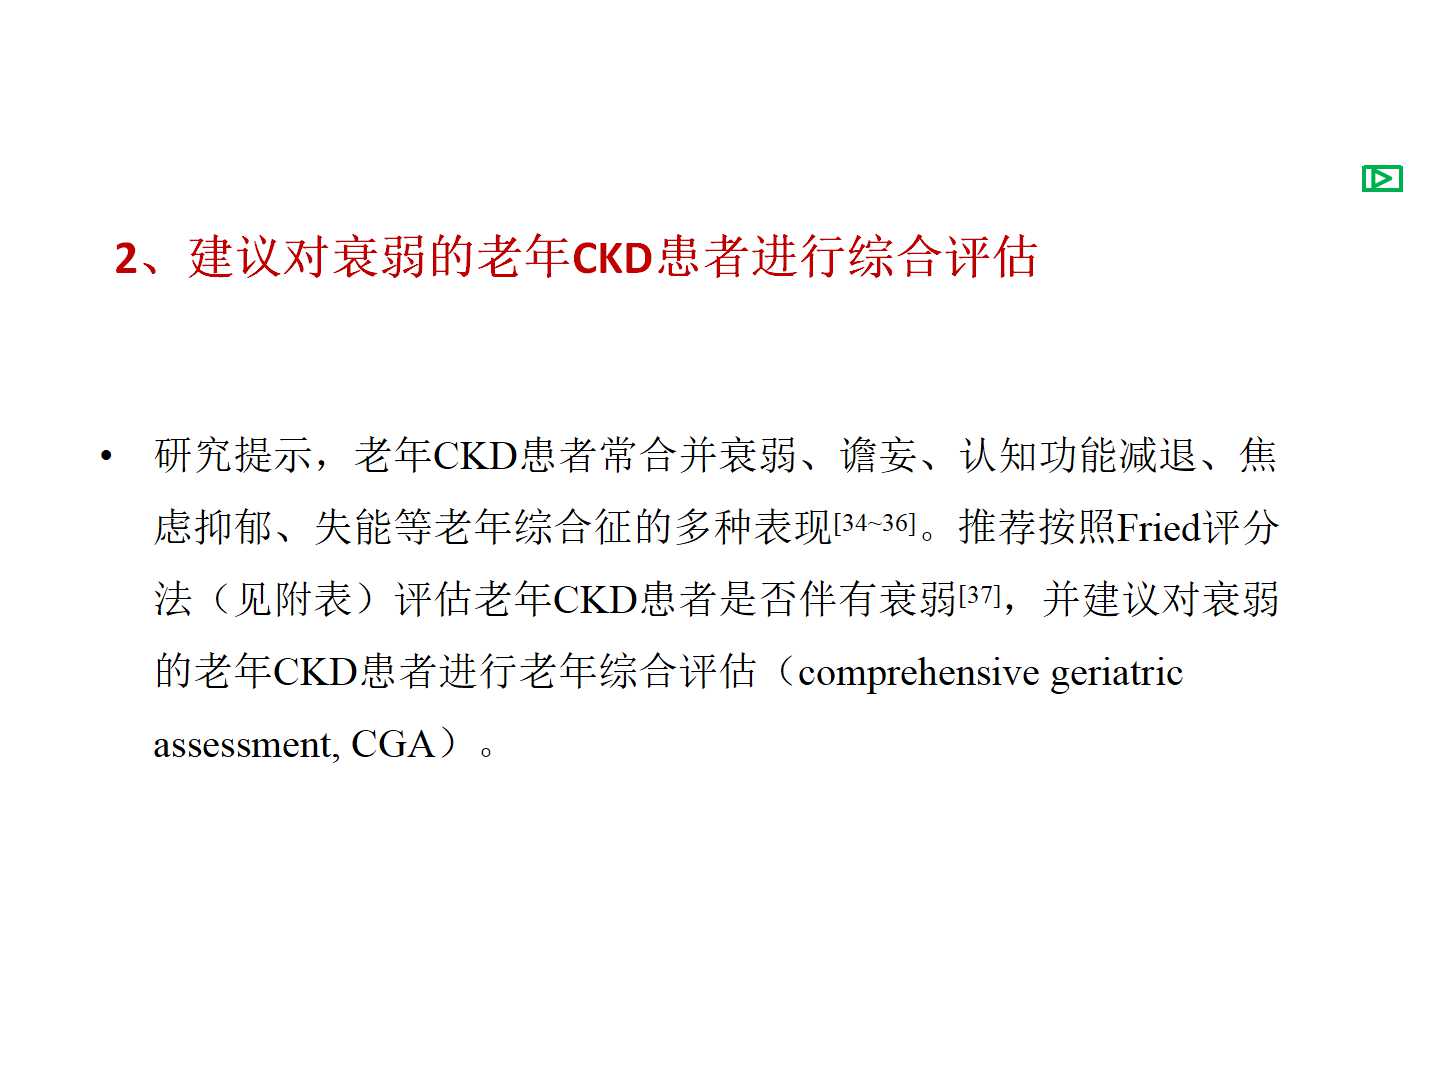 老年慢性肾脏病诊治的中国专家共识(2018)